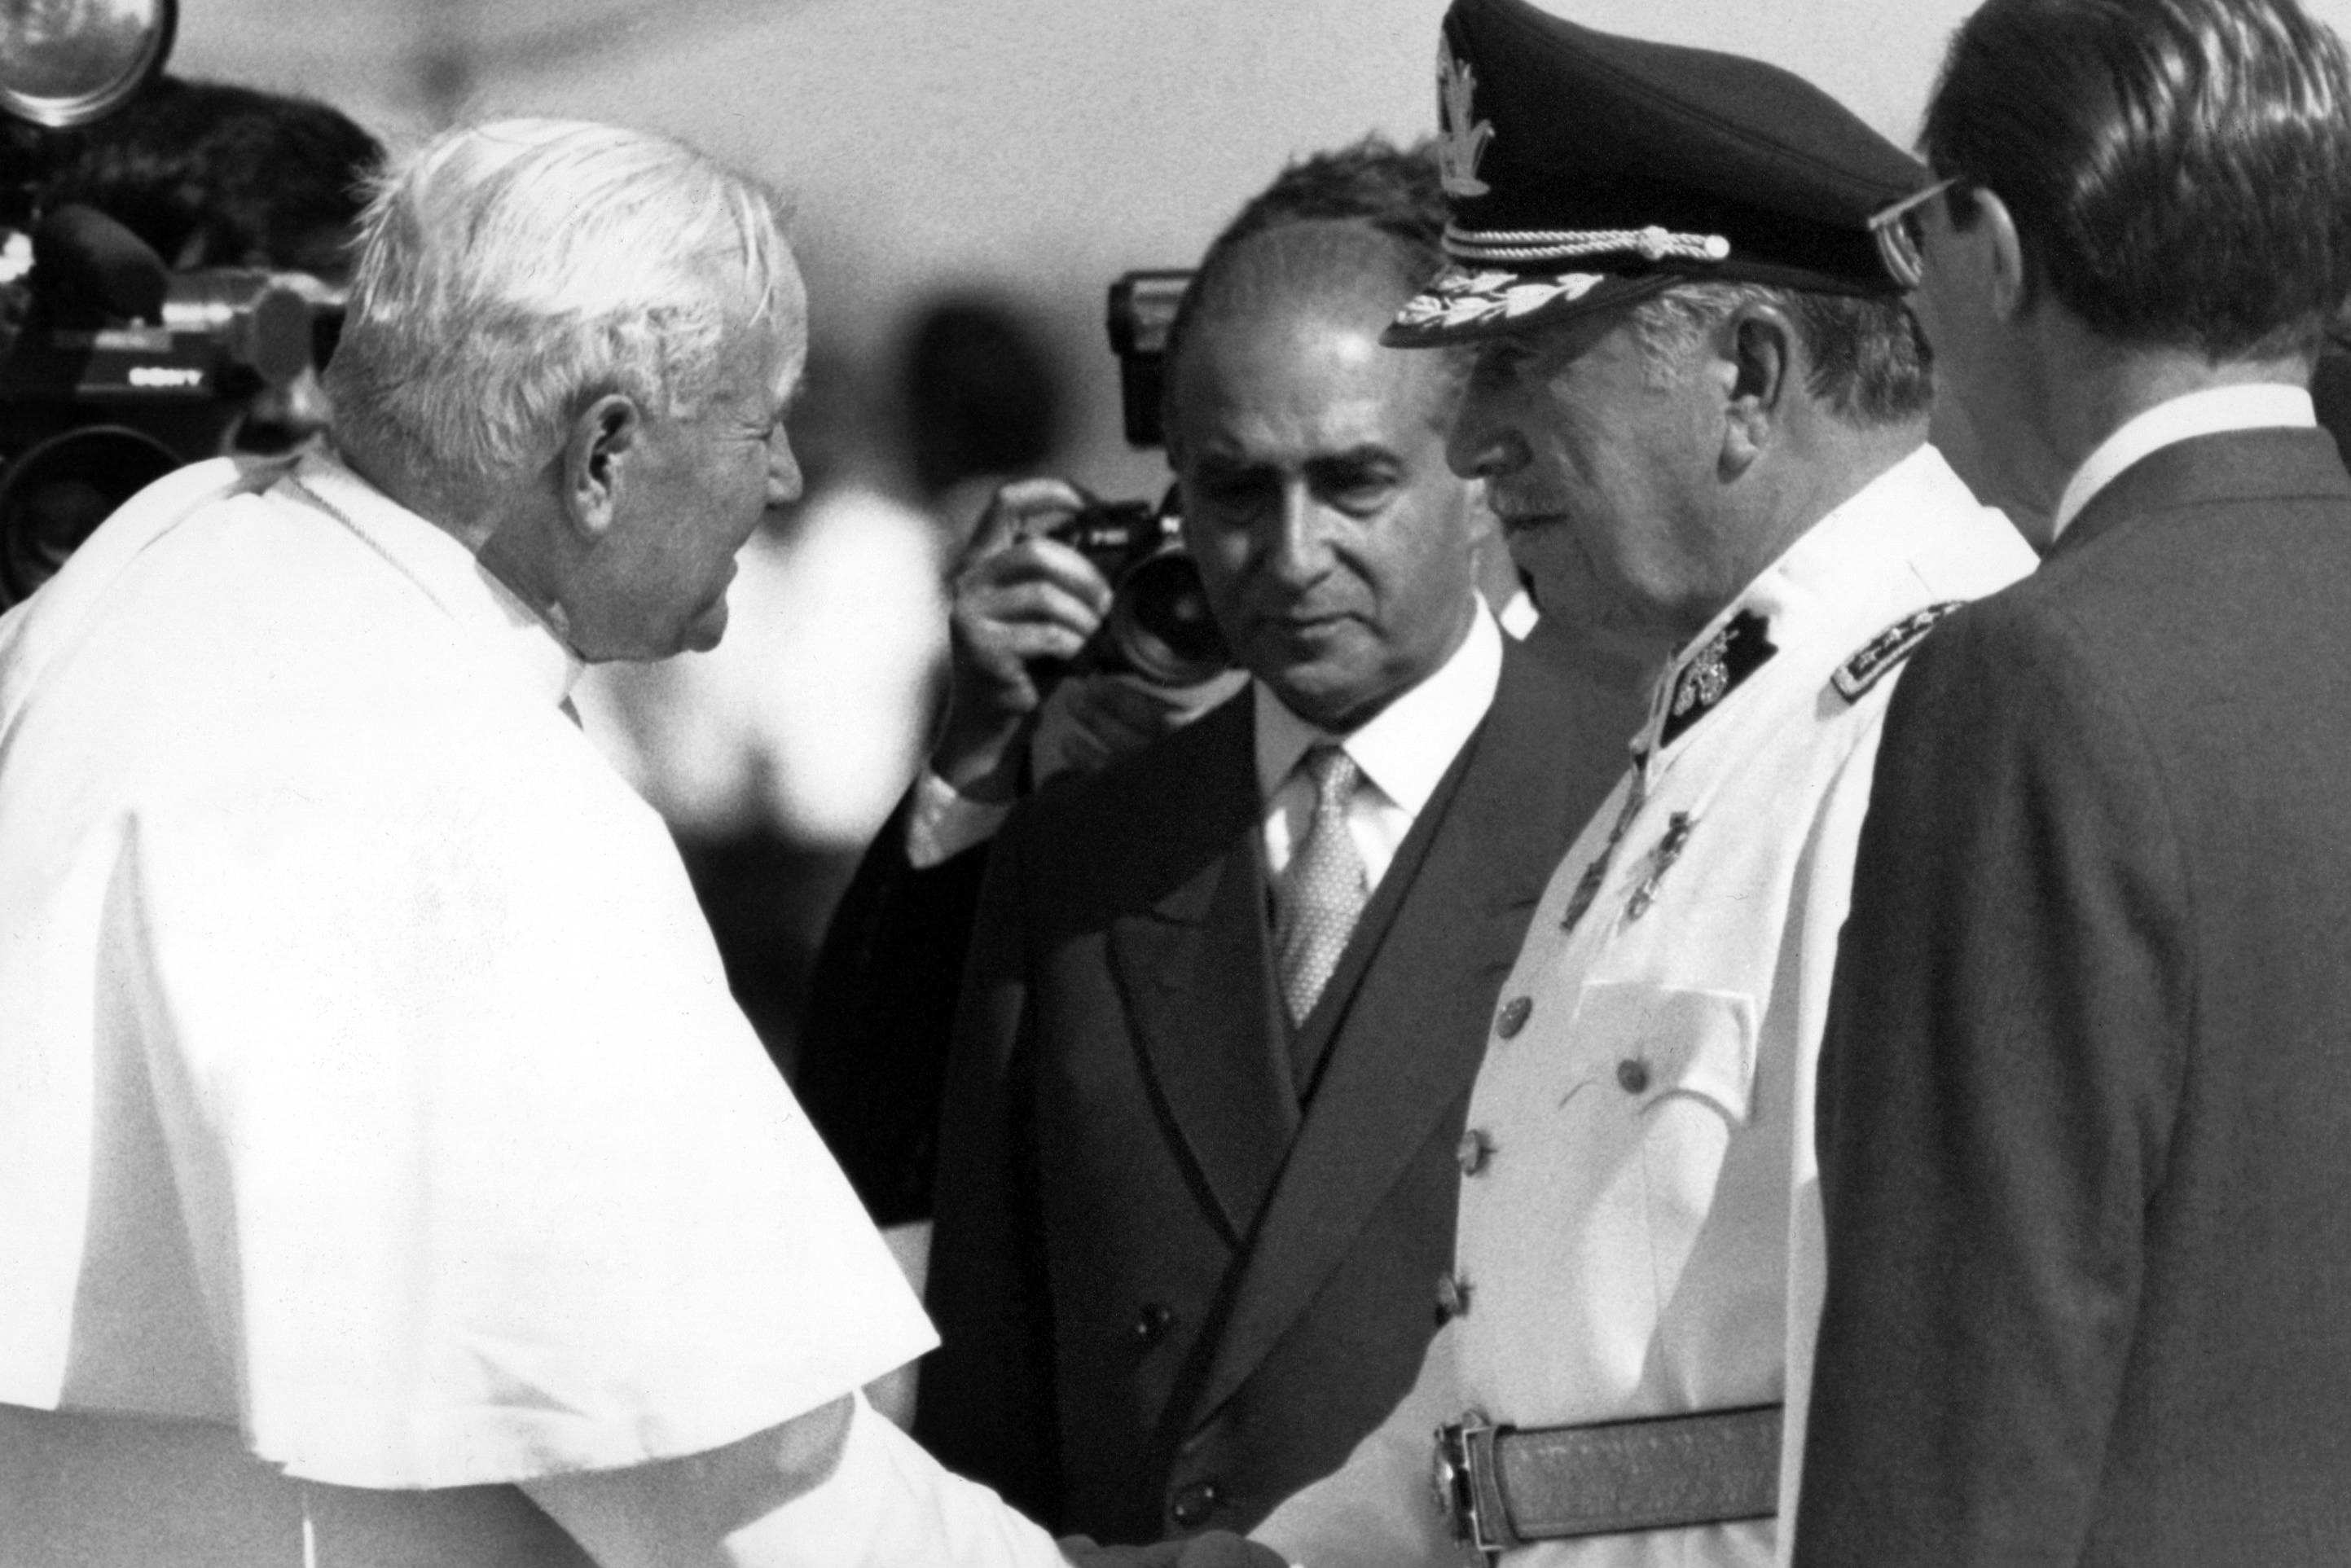 Papież Jan Paweł II ściska rękę dyktatora Chile Augusto Pinocheta, w otoczeniu urzędników w garniturach.